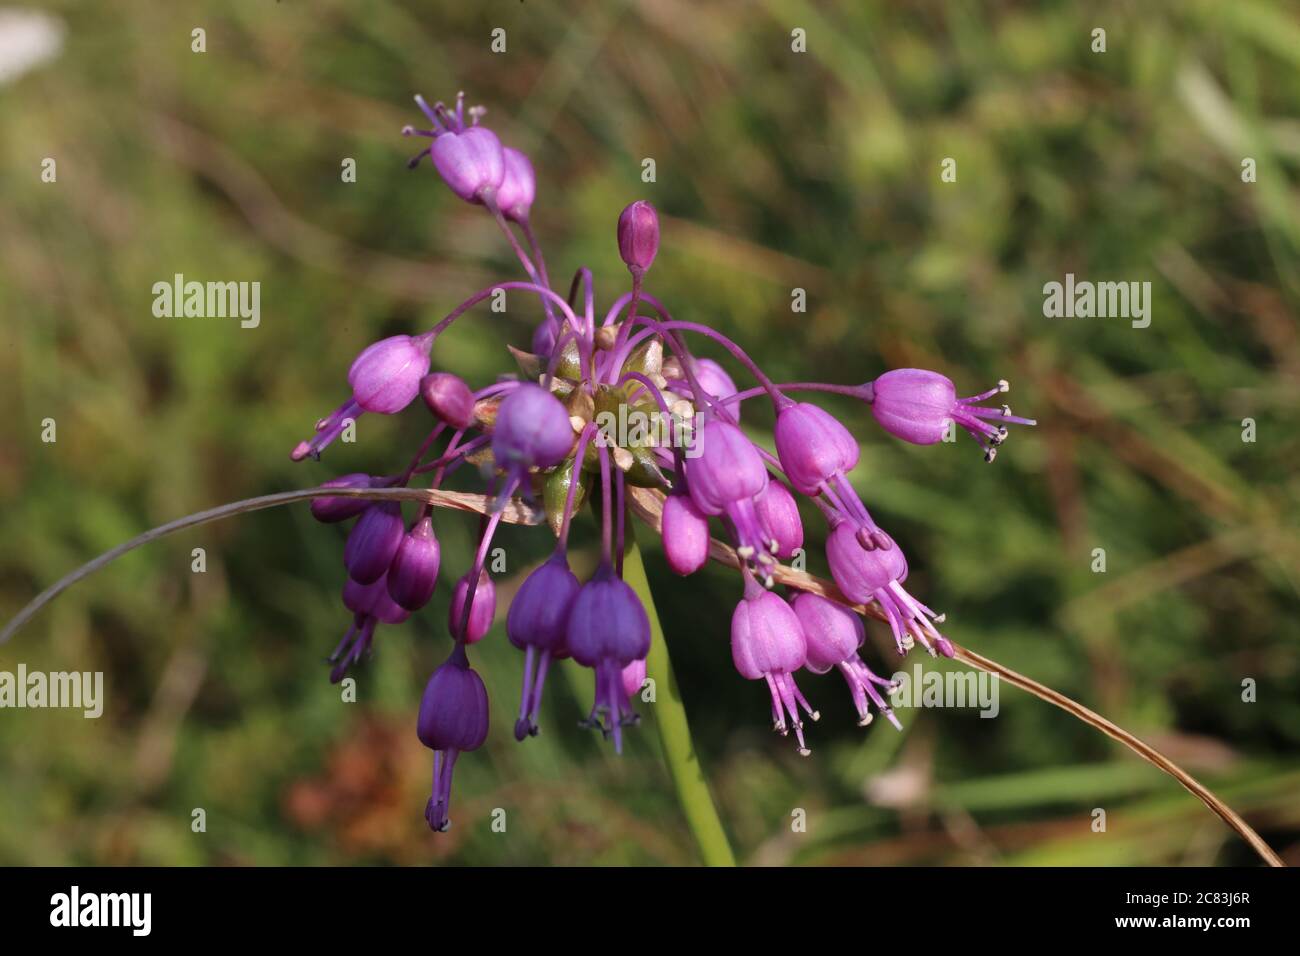 Allium carinatum subsp. carinatum, Keeled Garlic. Wild plant shot in summer. Stock Photo